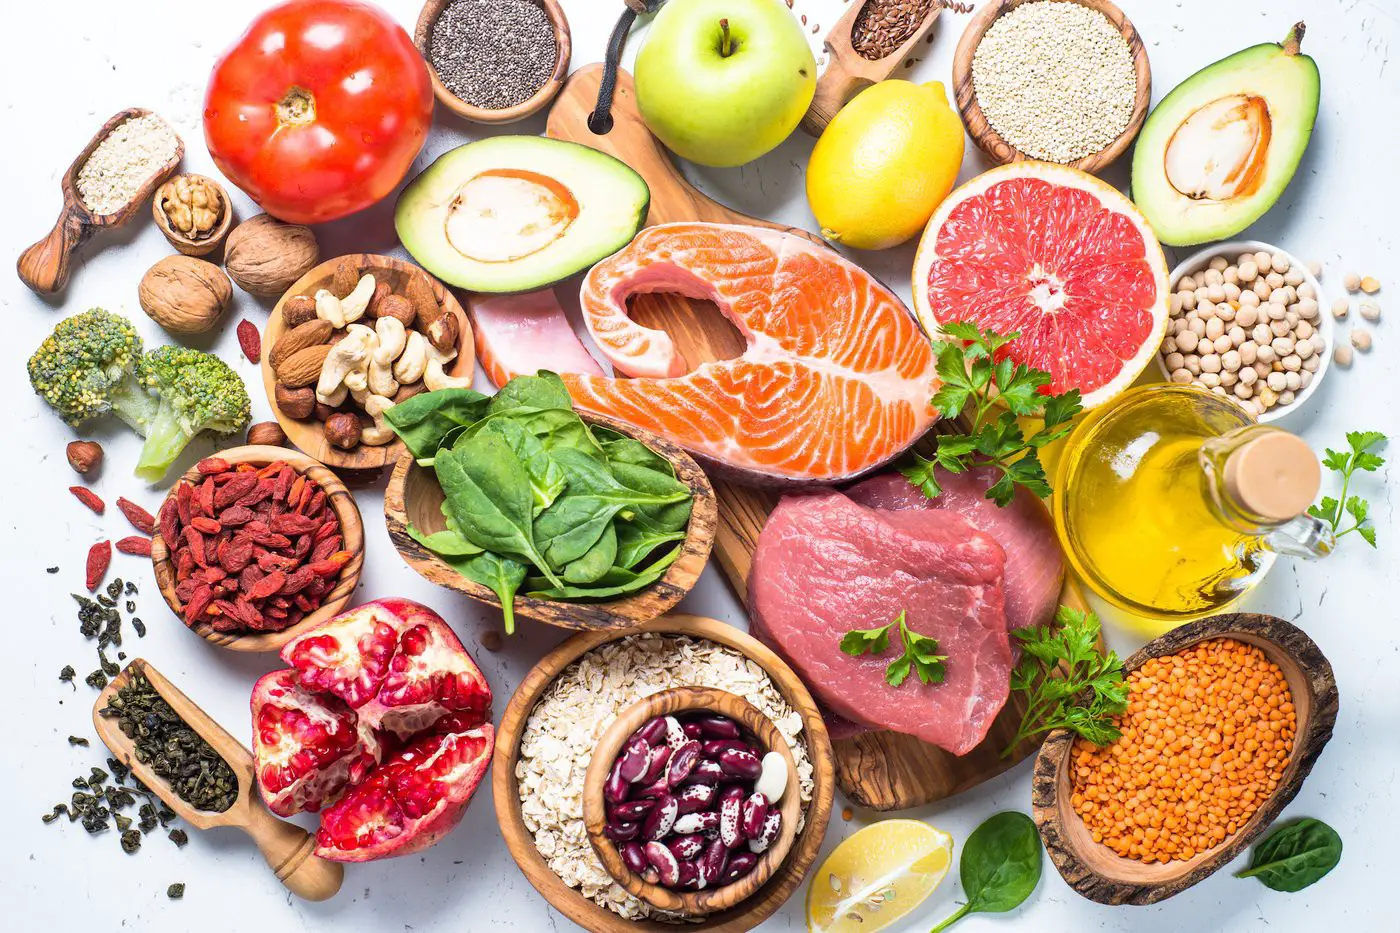 dieta hiperproteica tipos de alimentos